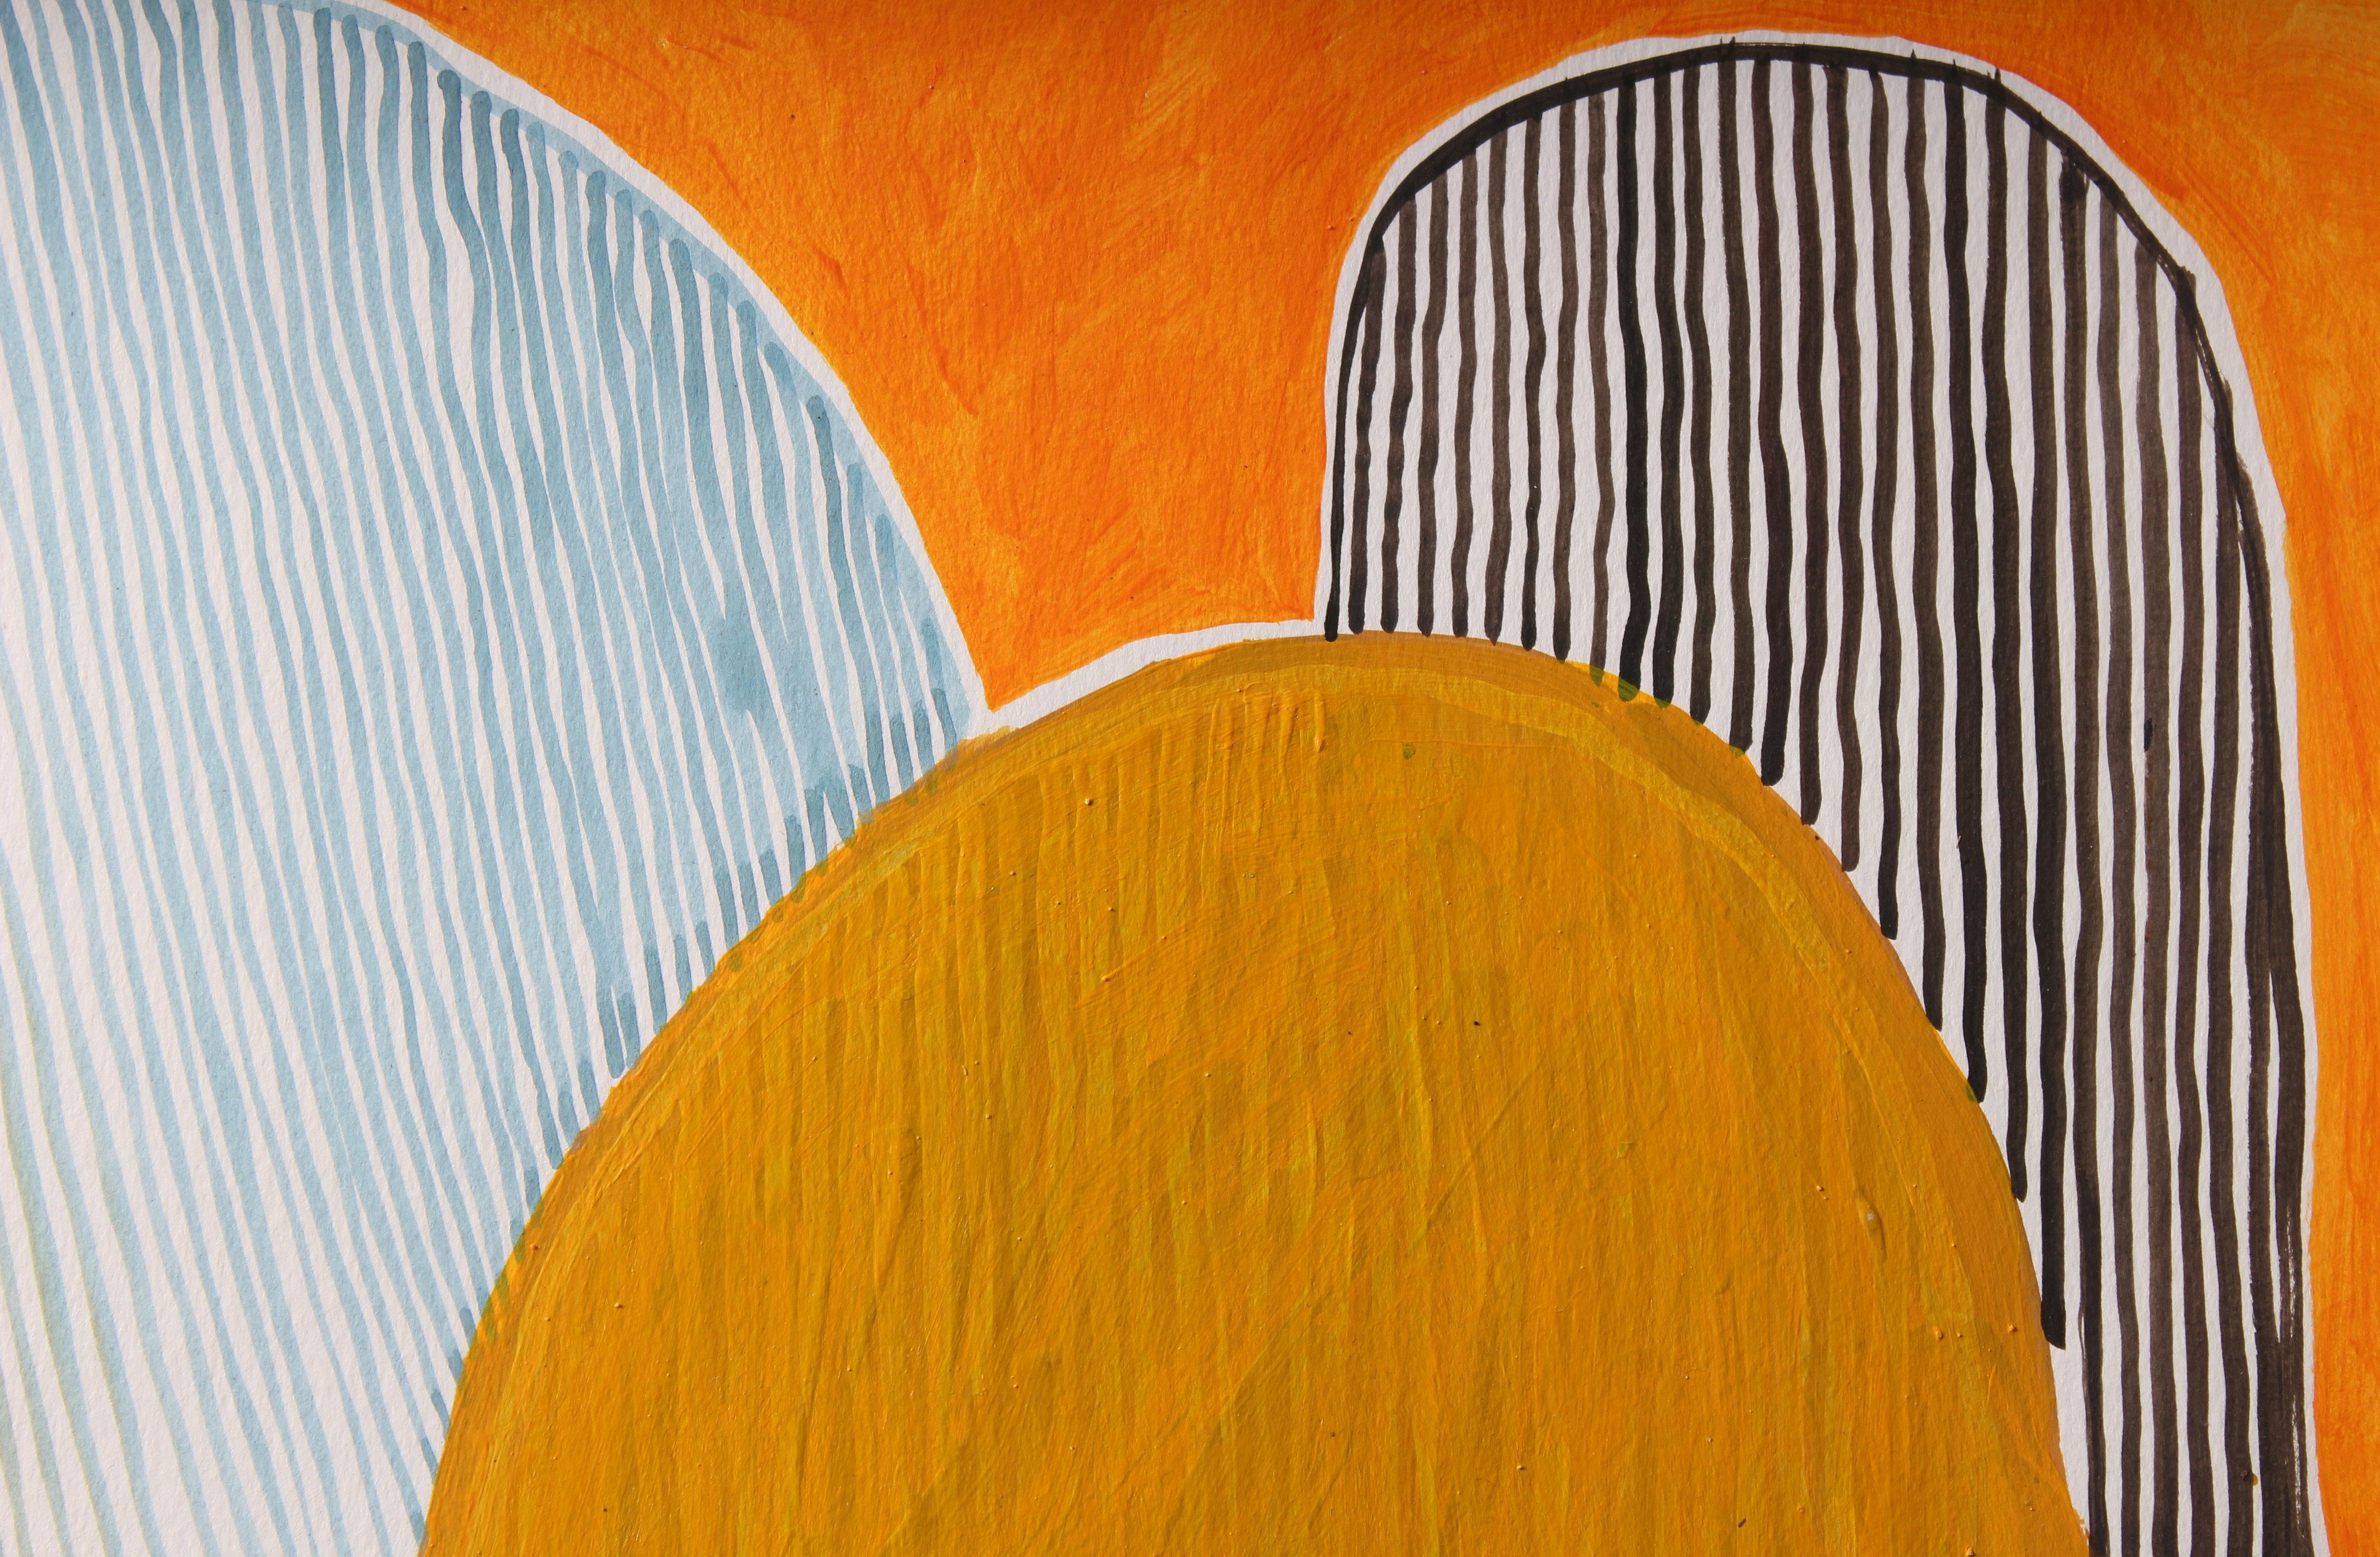 Cross Purpose Temple Series 7, Nicky Marais, abstract painting - Gray Abstract Painting by Nicky Marais 